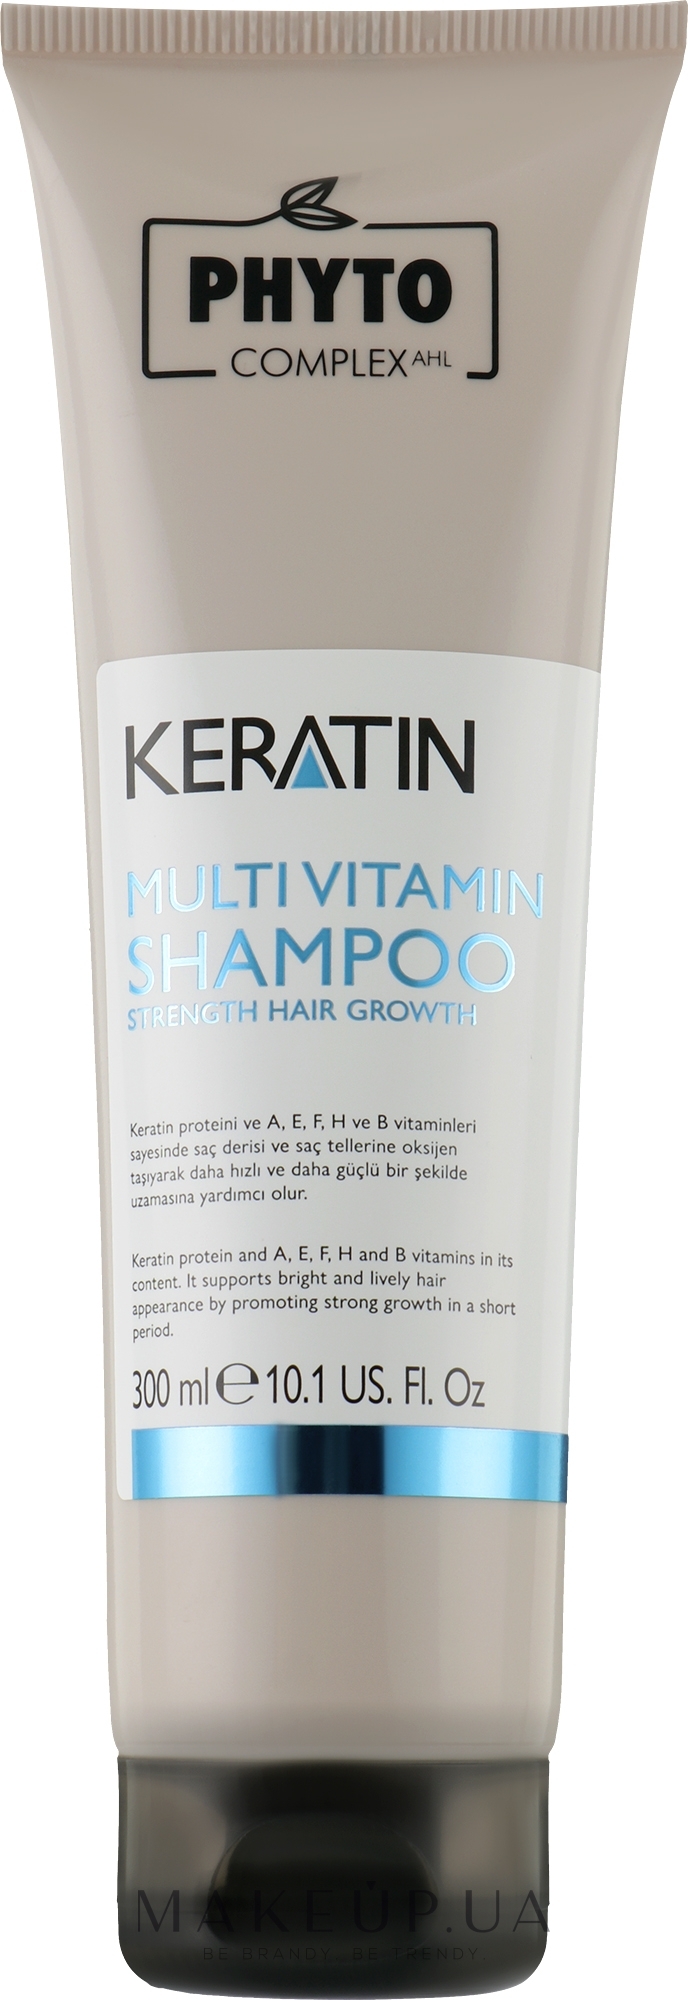 Зміцнювальний шампунь з мультивітамінами для тонкого і тьмяного волосся - Phytocomplex AHL Keratin Multivitamin Shampoo — фото 300ml